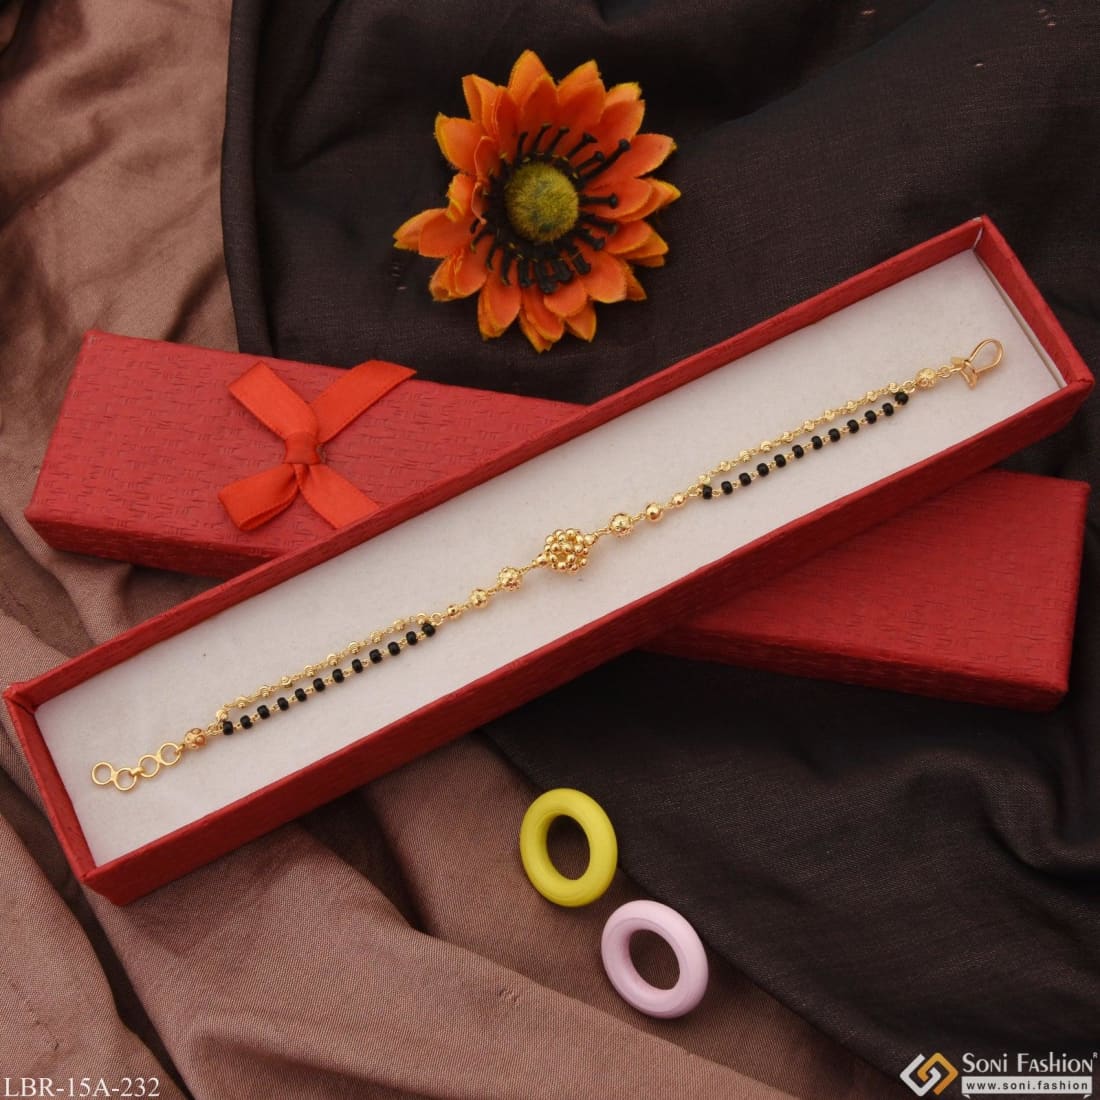 Personalized Bracelets | Monica Vinader